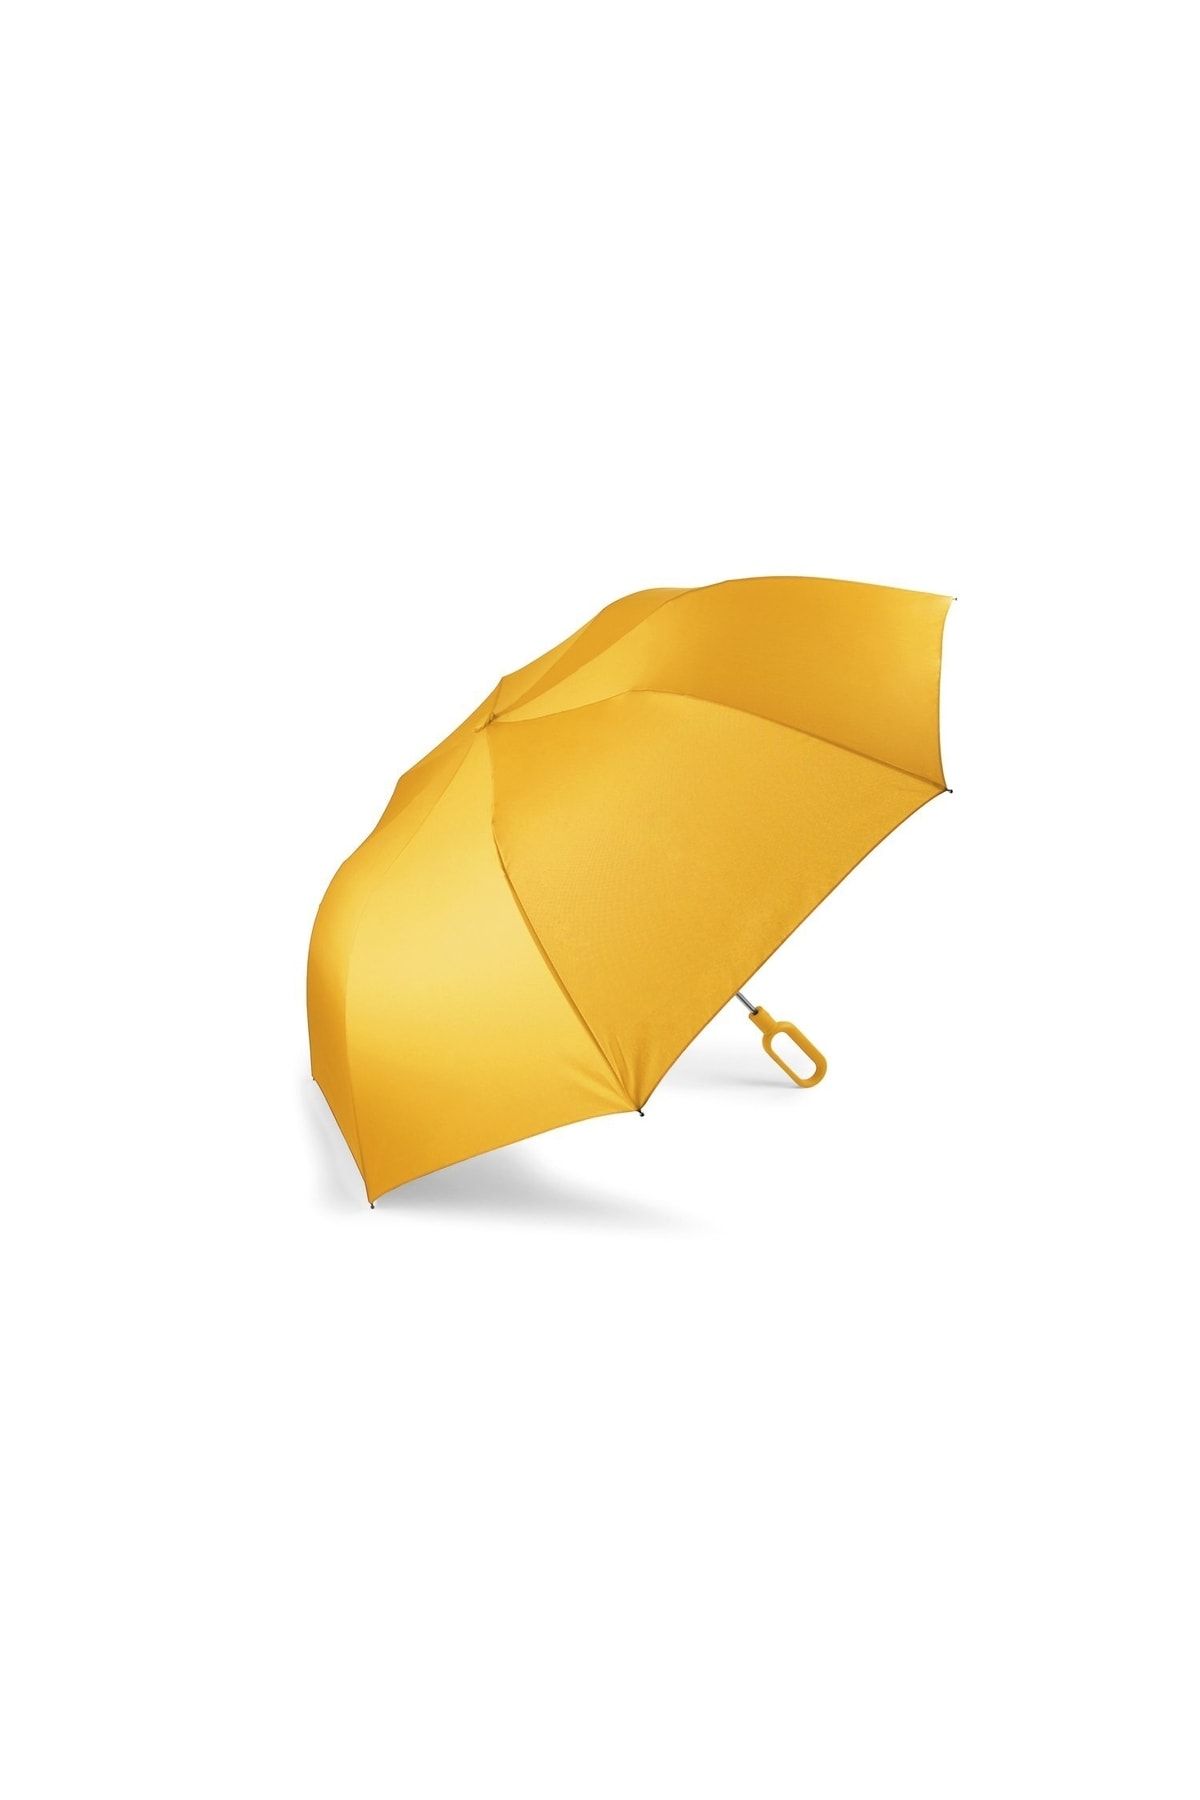 Genel Markalar Mini Hook Şemsiye 122x50 cm Sarı